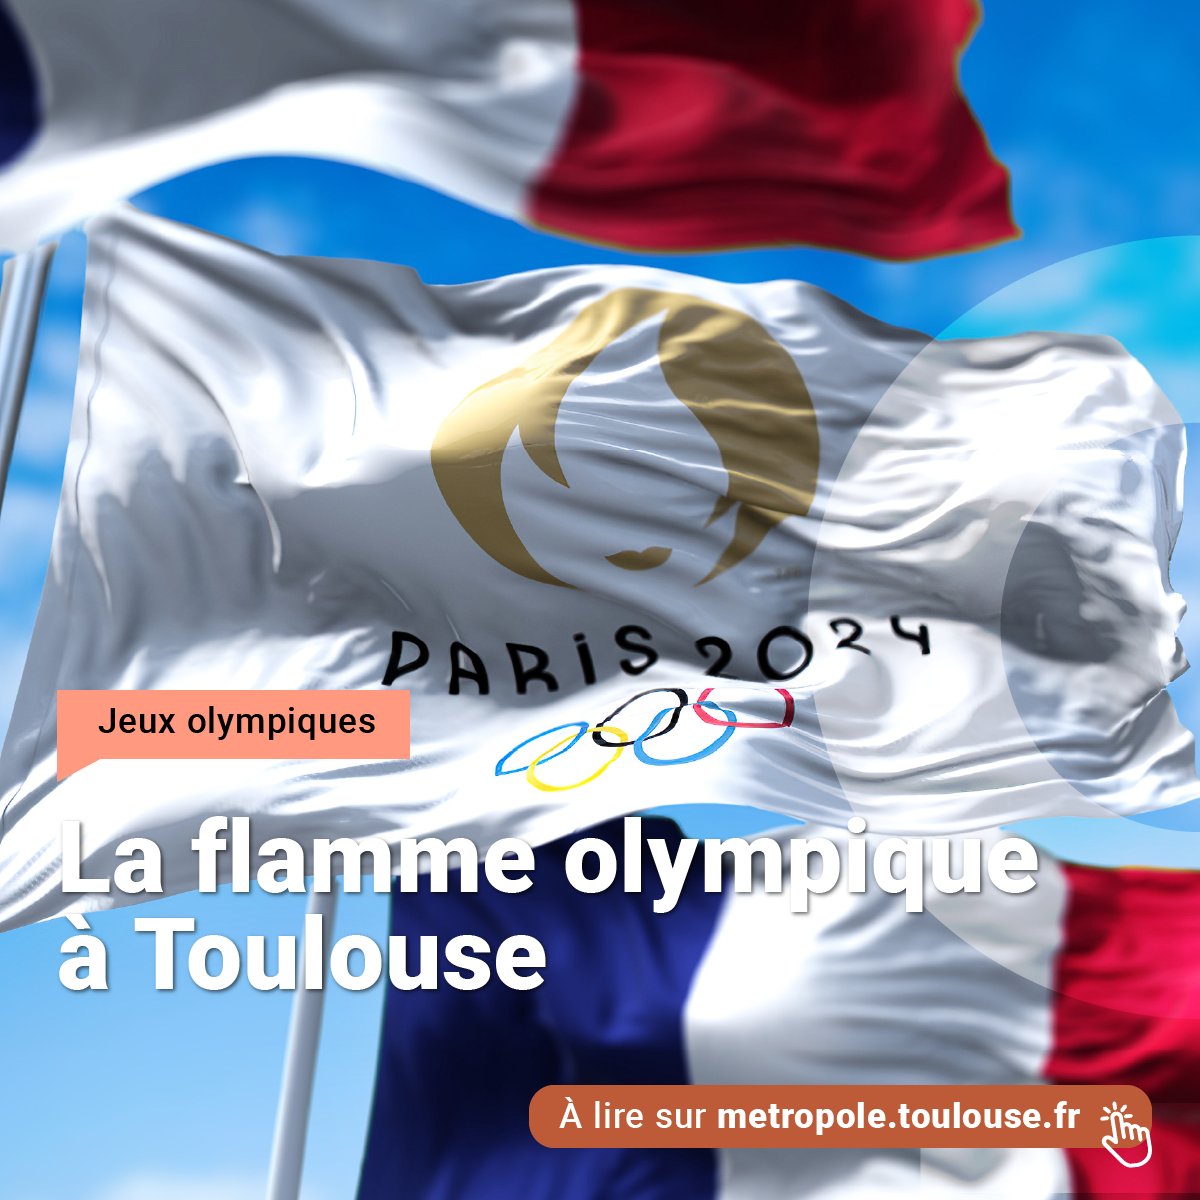 La flamme olympique fait étape à Toulouse vendredi 17 mai. Venez soutenir les porteurs de flamme et participez à la célébration au fil des animations sportives prévues dans la ville. Attention à la circulation ! 🔗 metropole.toulouse.fr/actualites/la-…